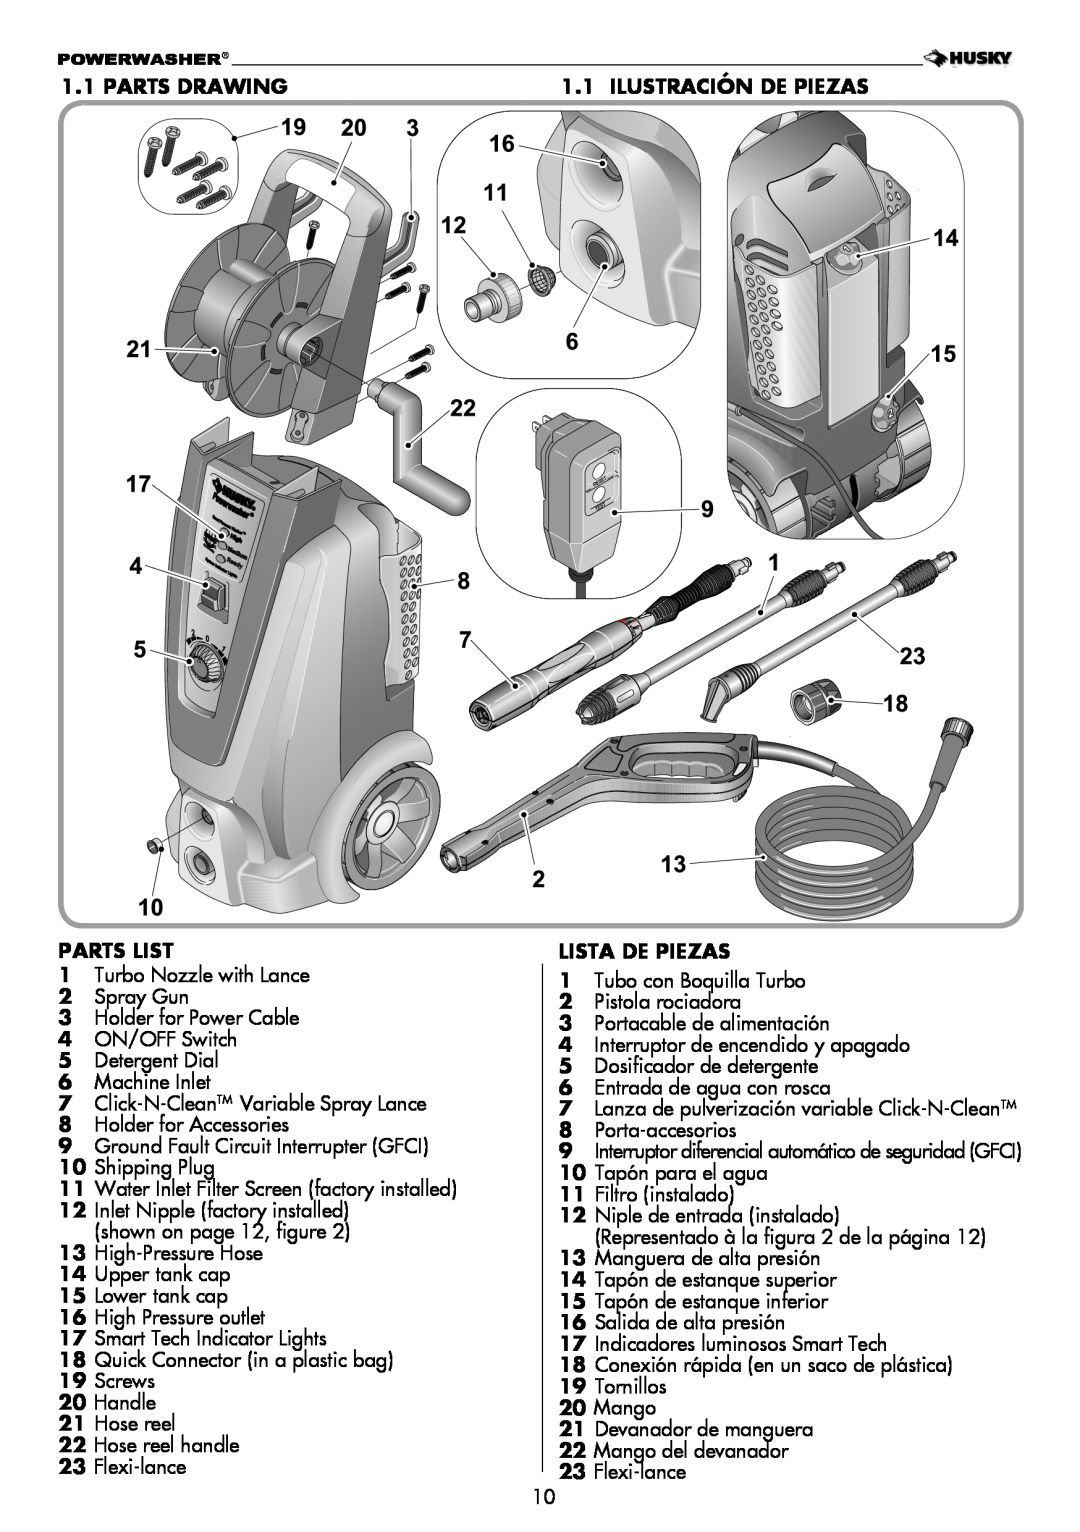 Husky H2000 warranty Parts Drawing Parts List, ilustración DE PIEZAS LISTA DE PIEZAS 